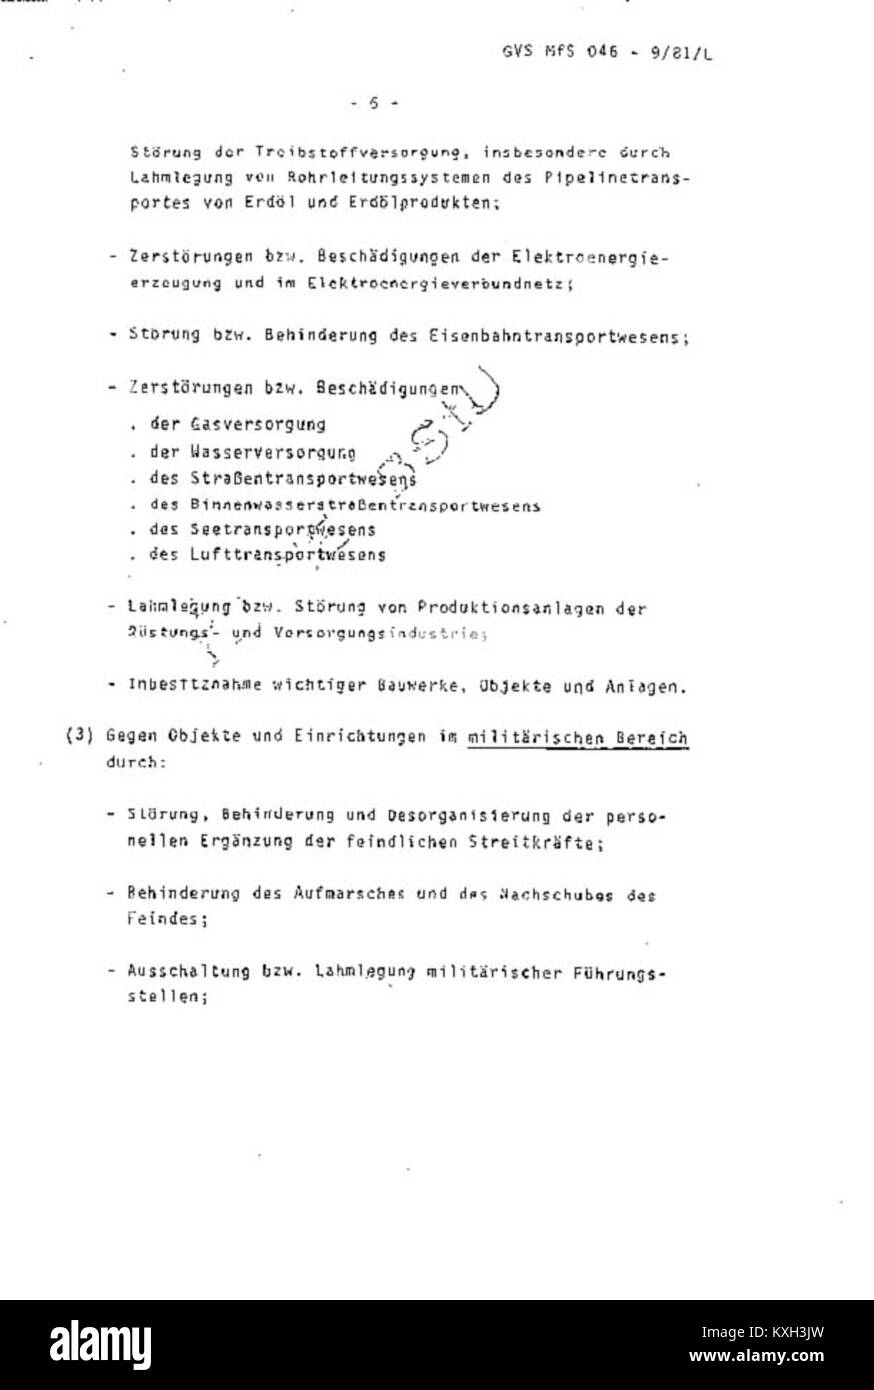 AGMS - Einsatzgrundsätze und Hauptaufgaben der Einsatzgruppen im Operationsgebiet Seite 06 Stock Photo